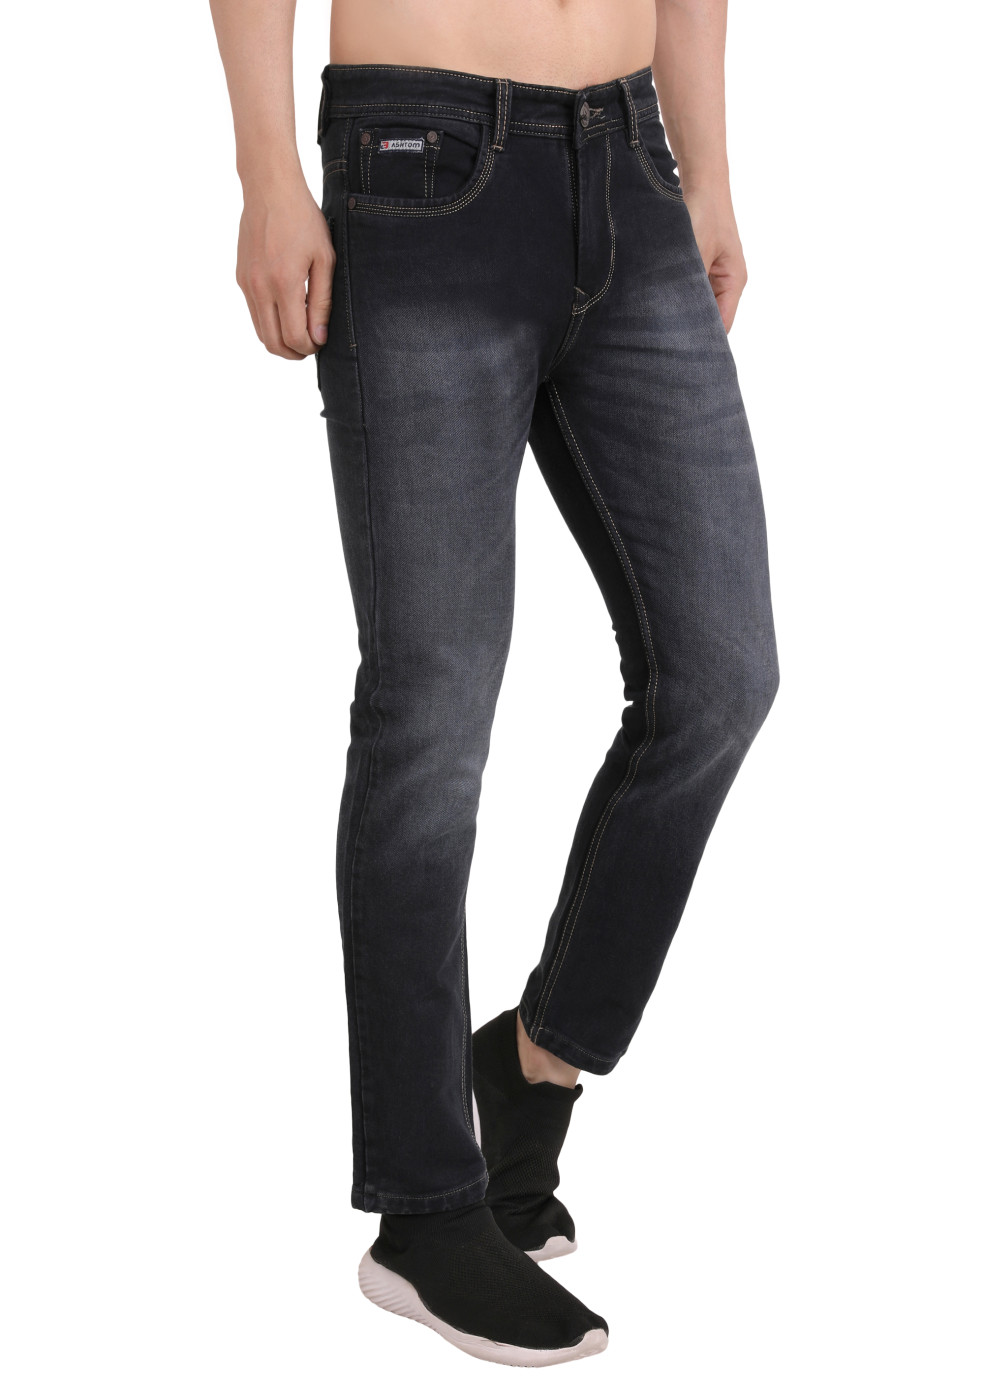 Buy online Denim Regular Fit Jeans For Men